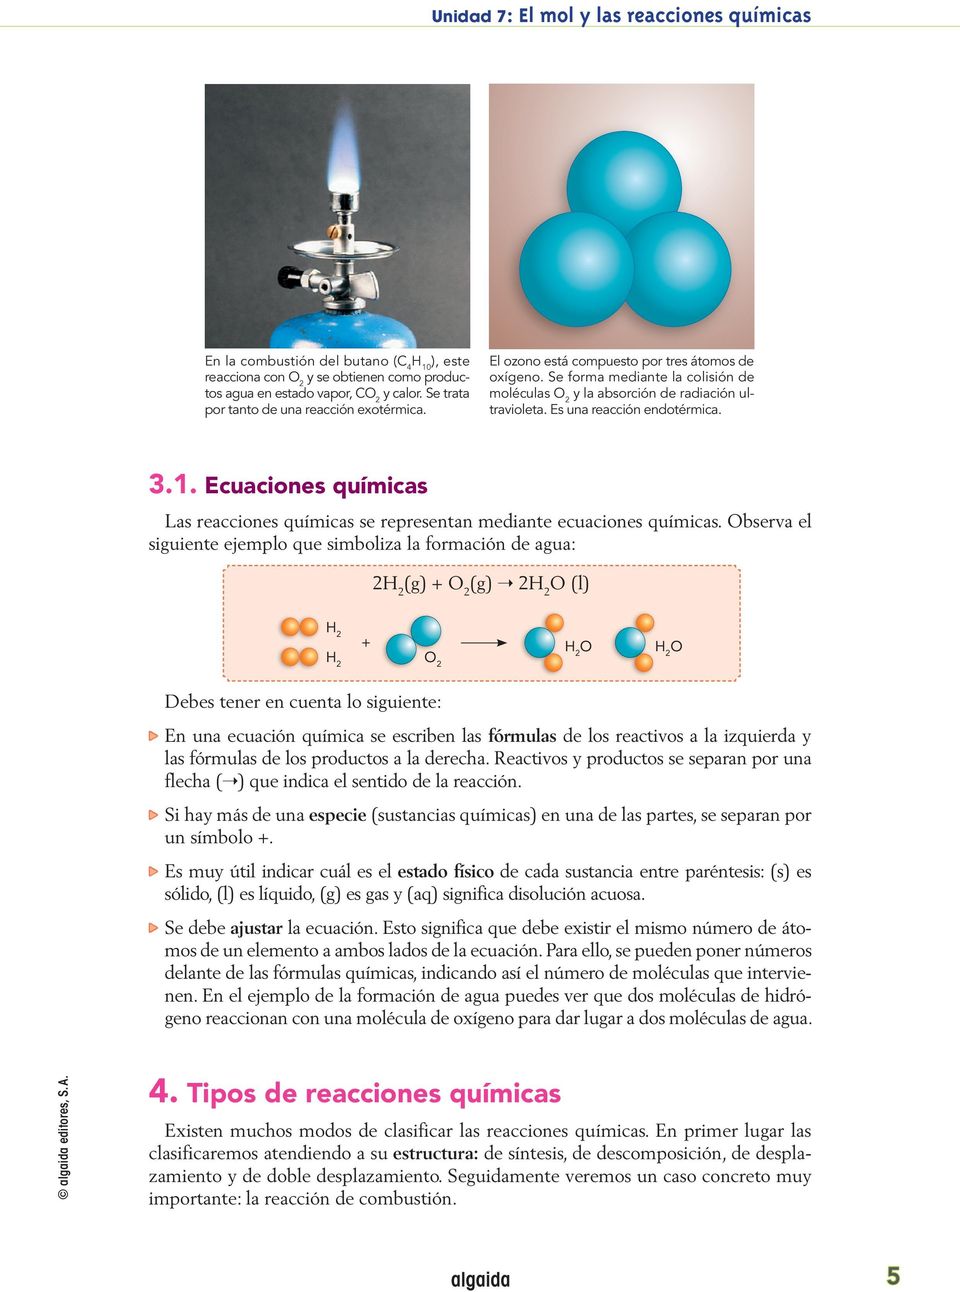 Ecuaciones químicas Las reacciones químicas se representan mediante ecuaciones químicas.